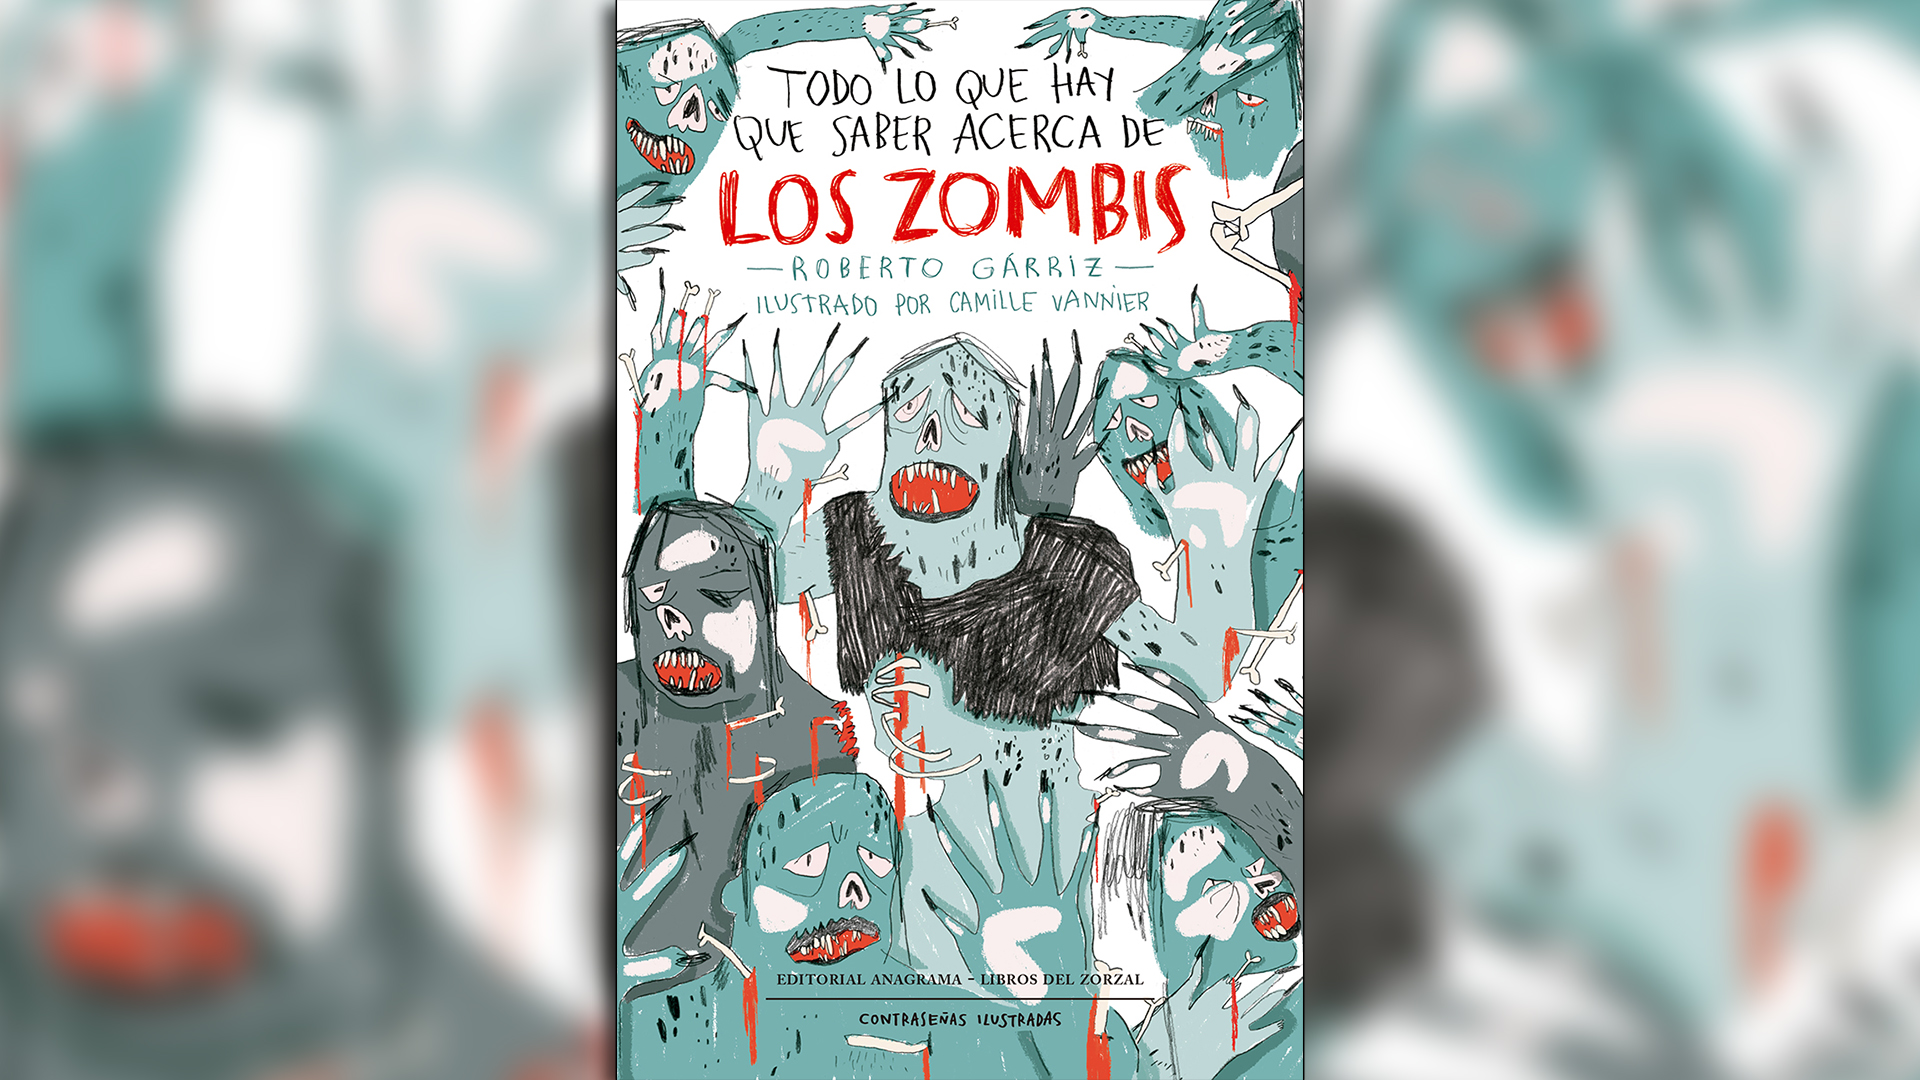 El libro fue escrito por Roberto Gárriz e ilustrado por Camille Vannier.